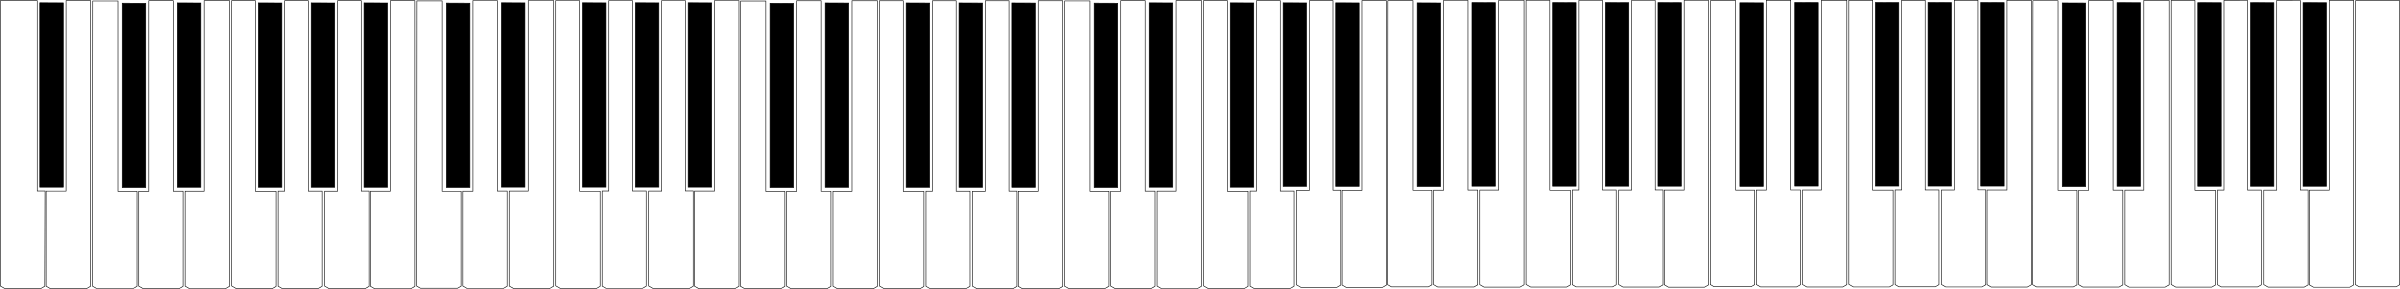 key clipart piano